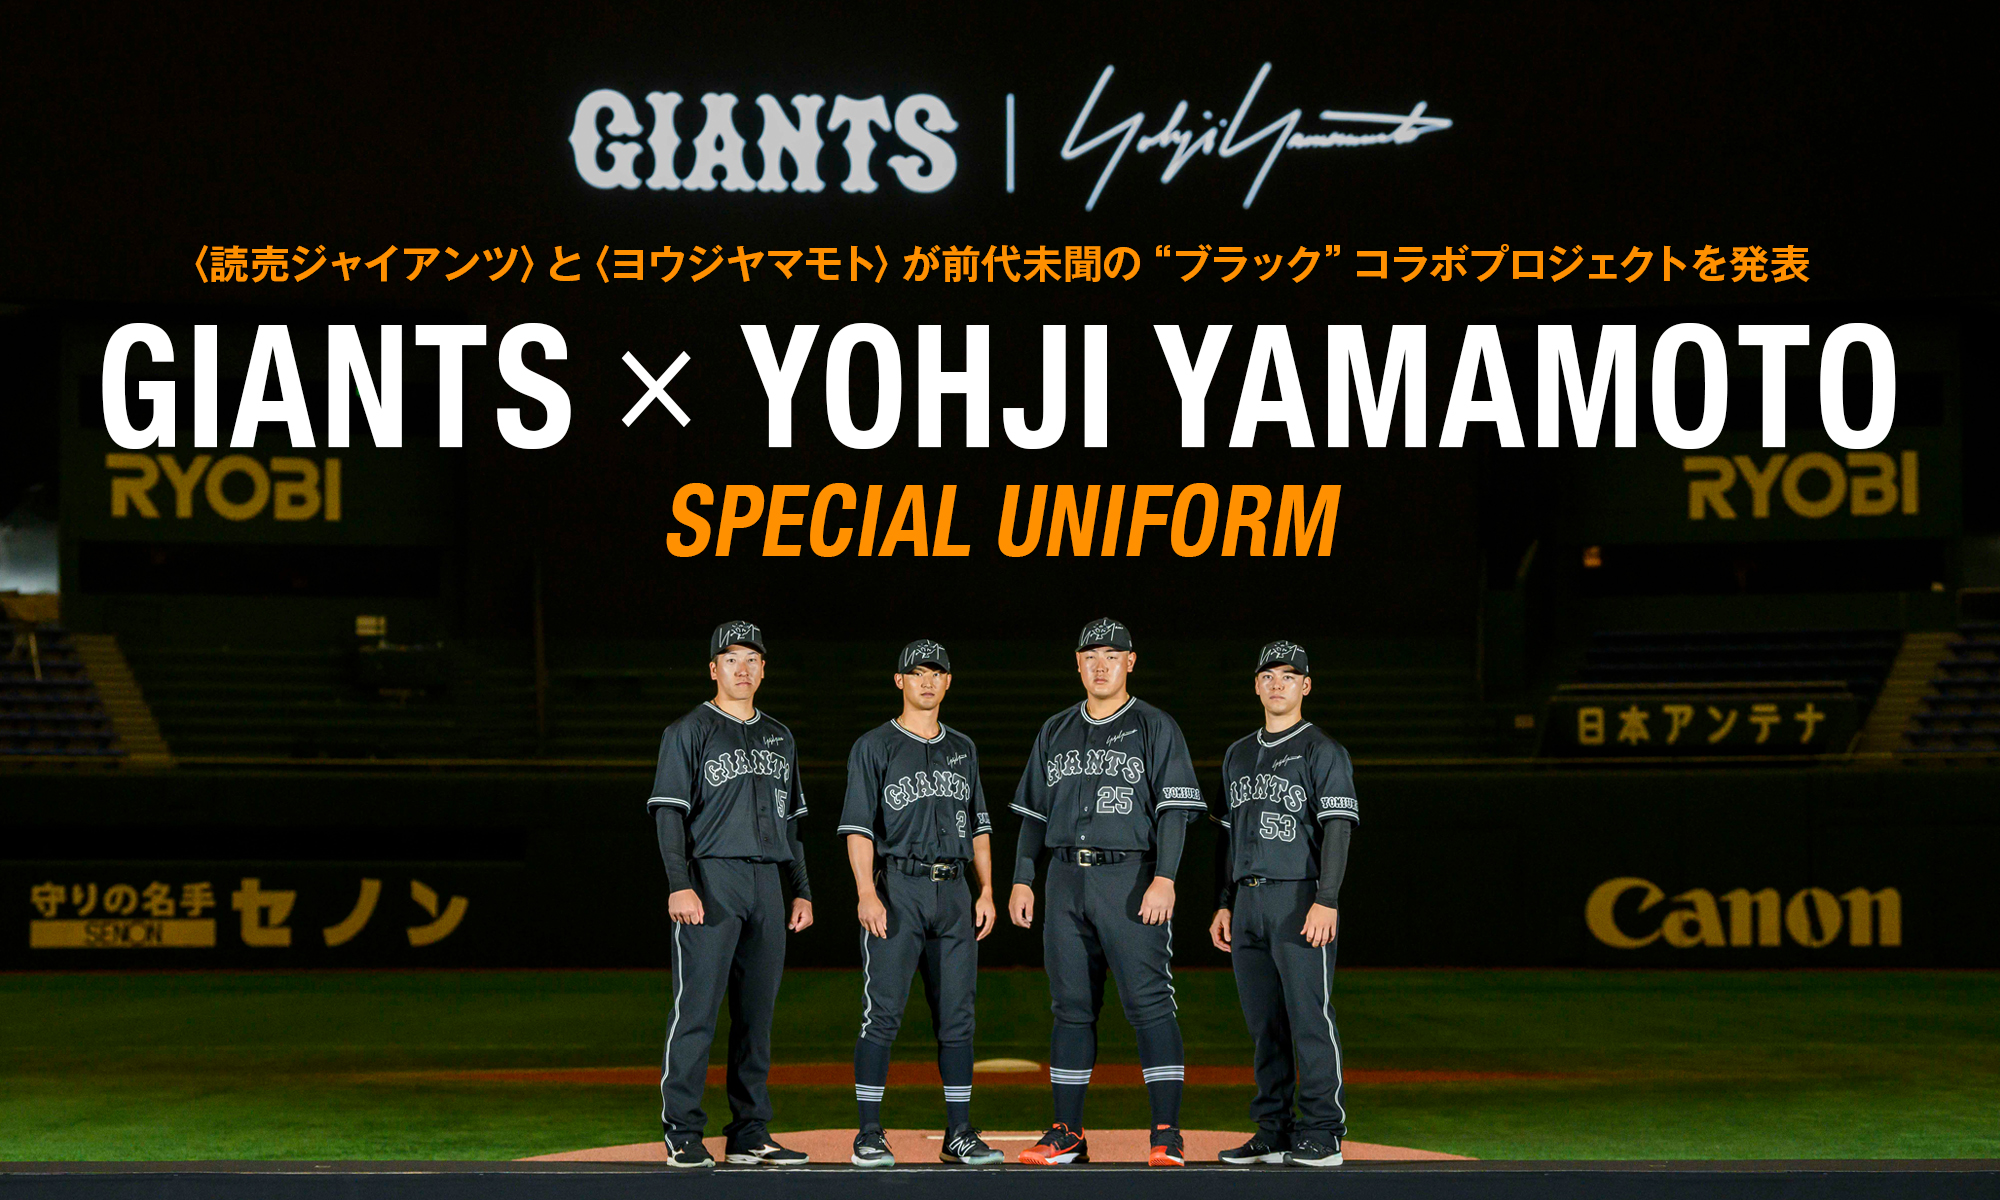 〈読売ジャイアンツ〉と〈ヨウジヤマモト〉が前代未聞の“ブラック”コラボプロジェクトを発表 GIANTS × YOHJI YAMAMOTO SPECIAL UNIFORM